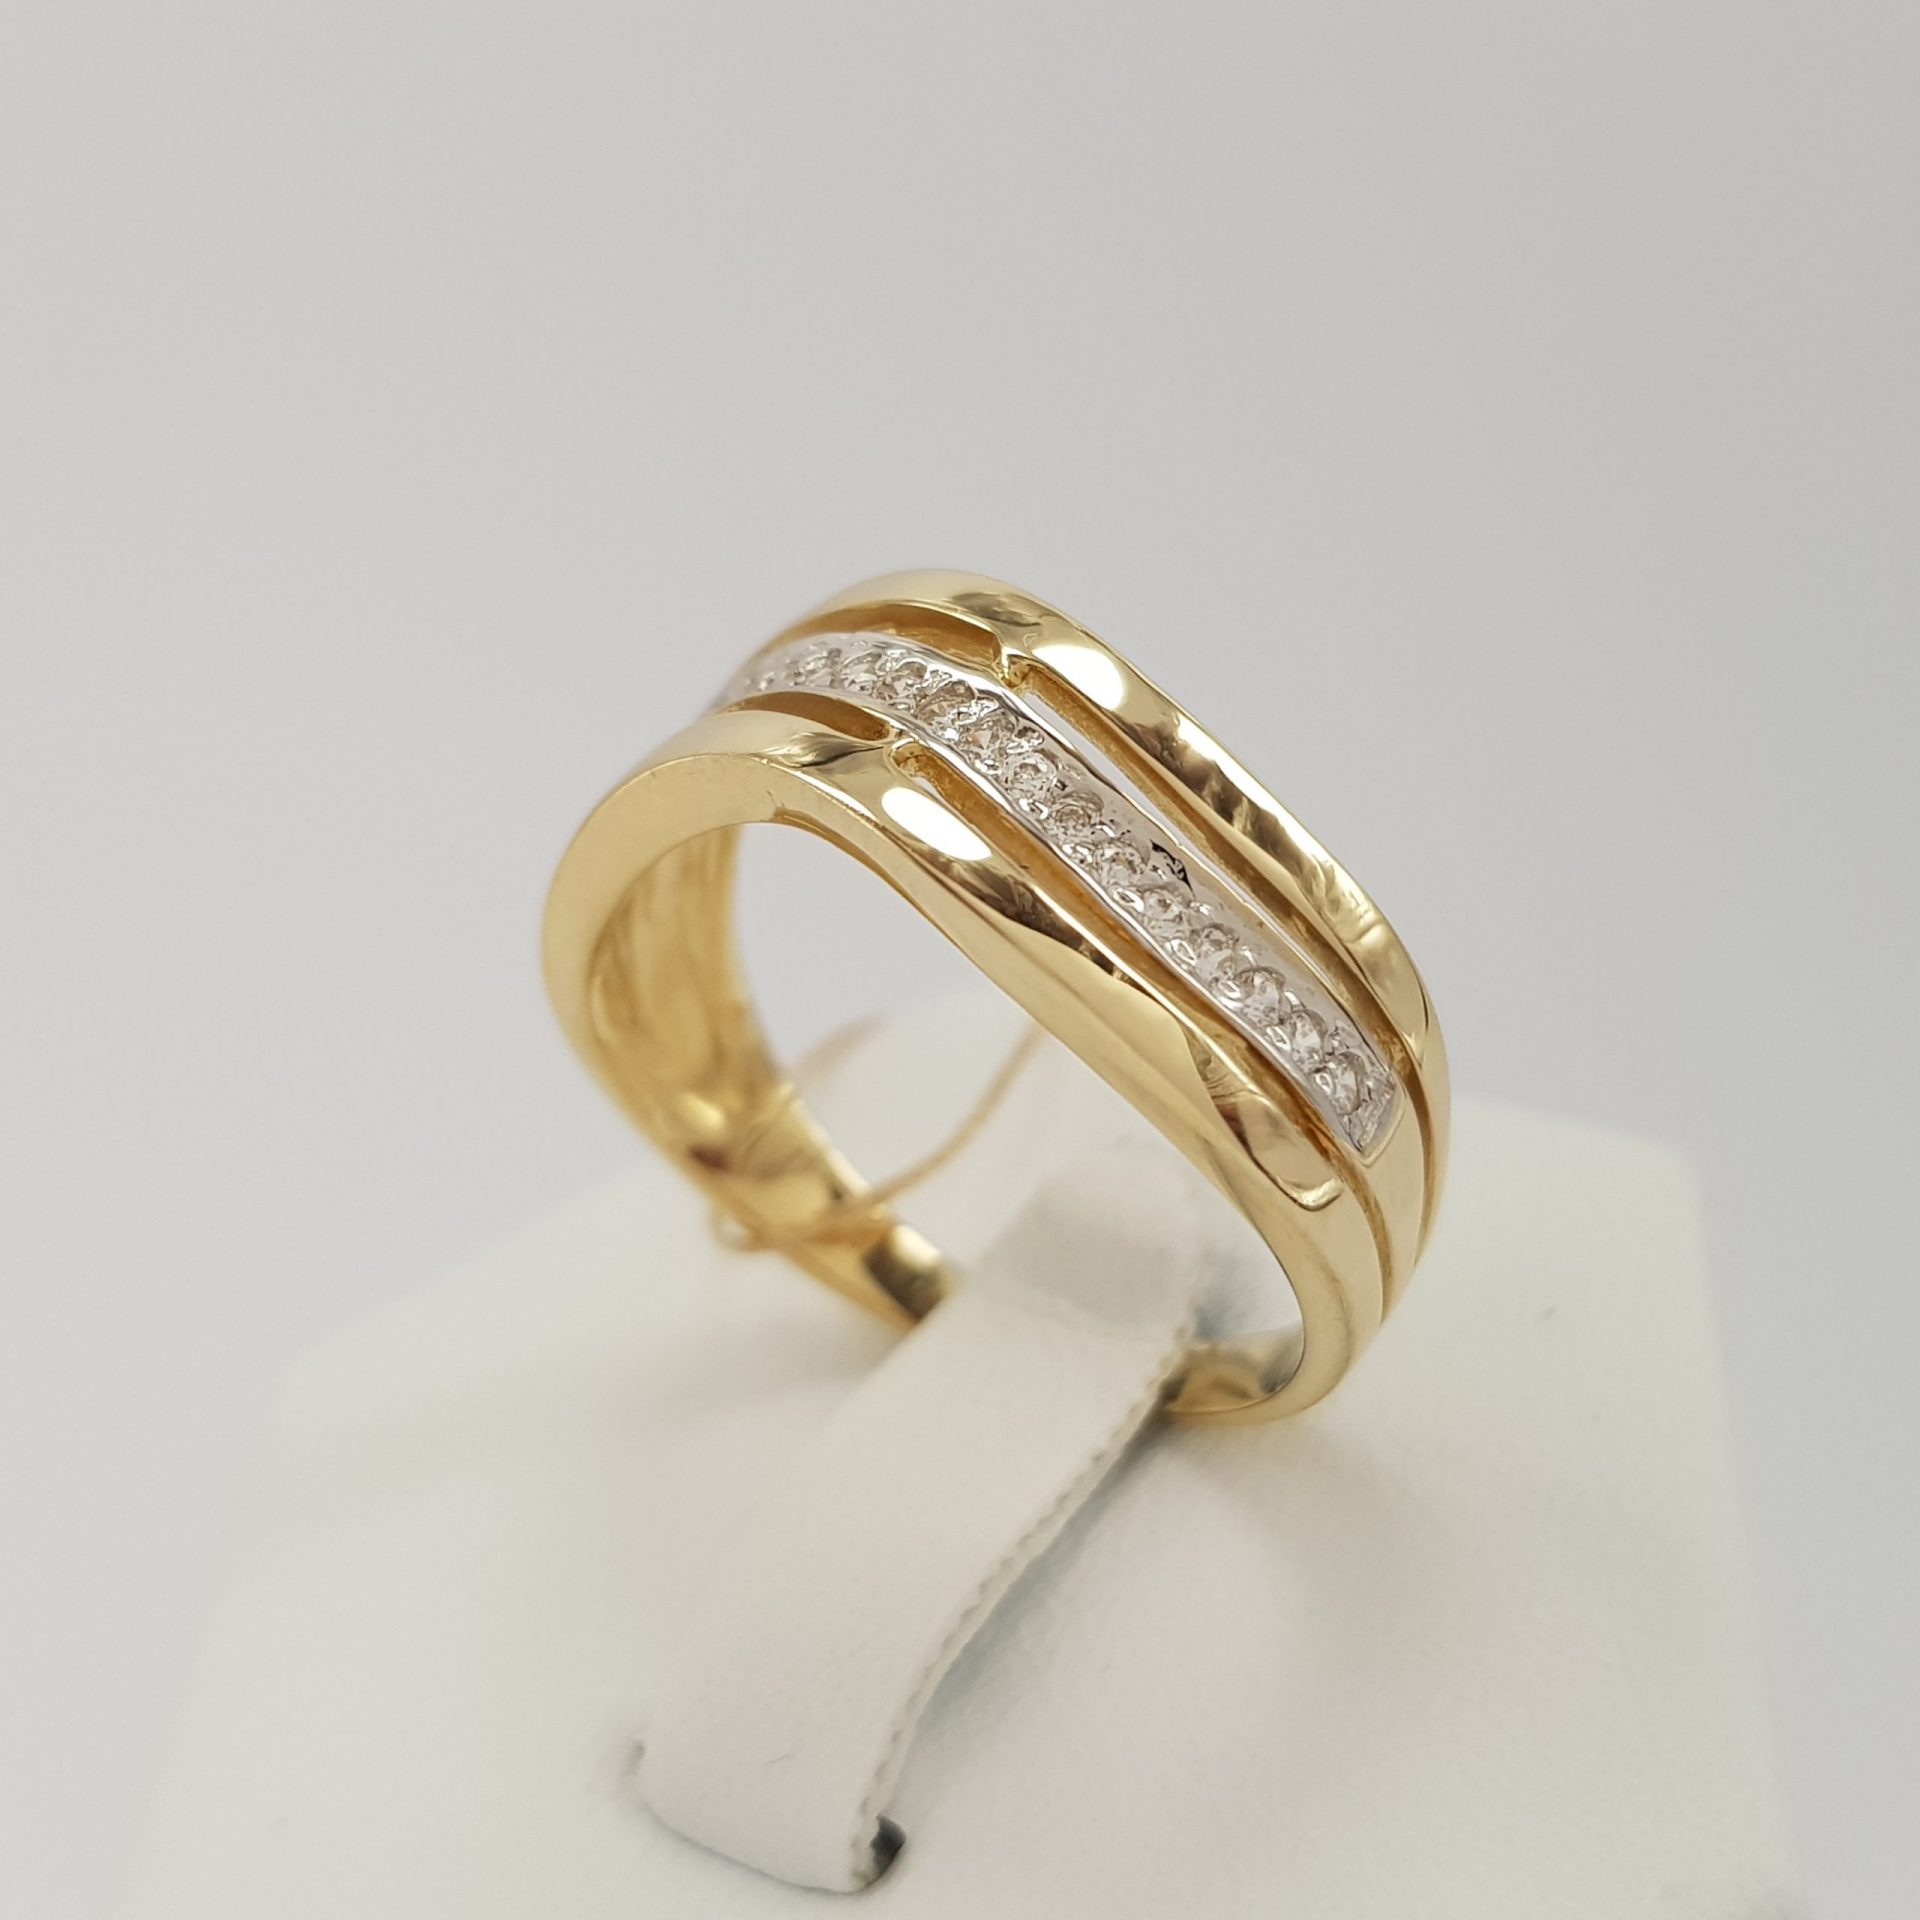 Dla eleganckiej kobiety - pierścionek złoty z cyrkoniami